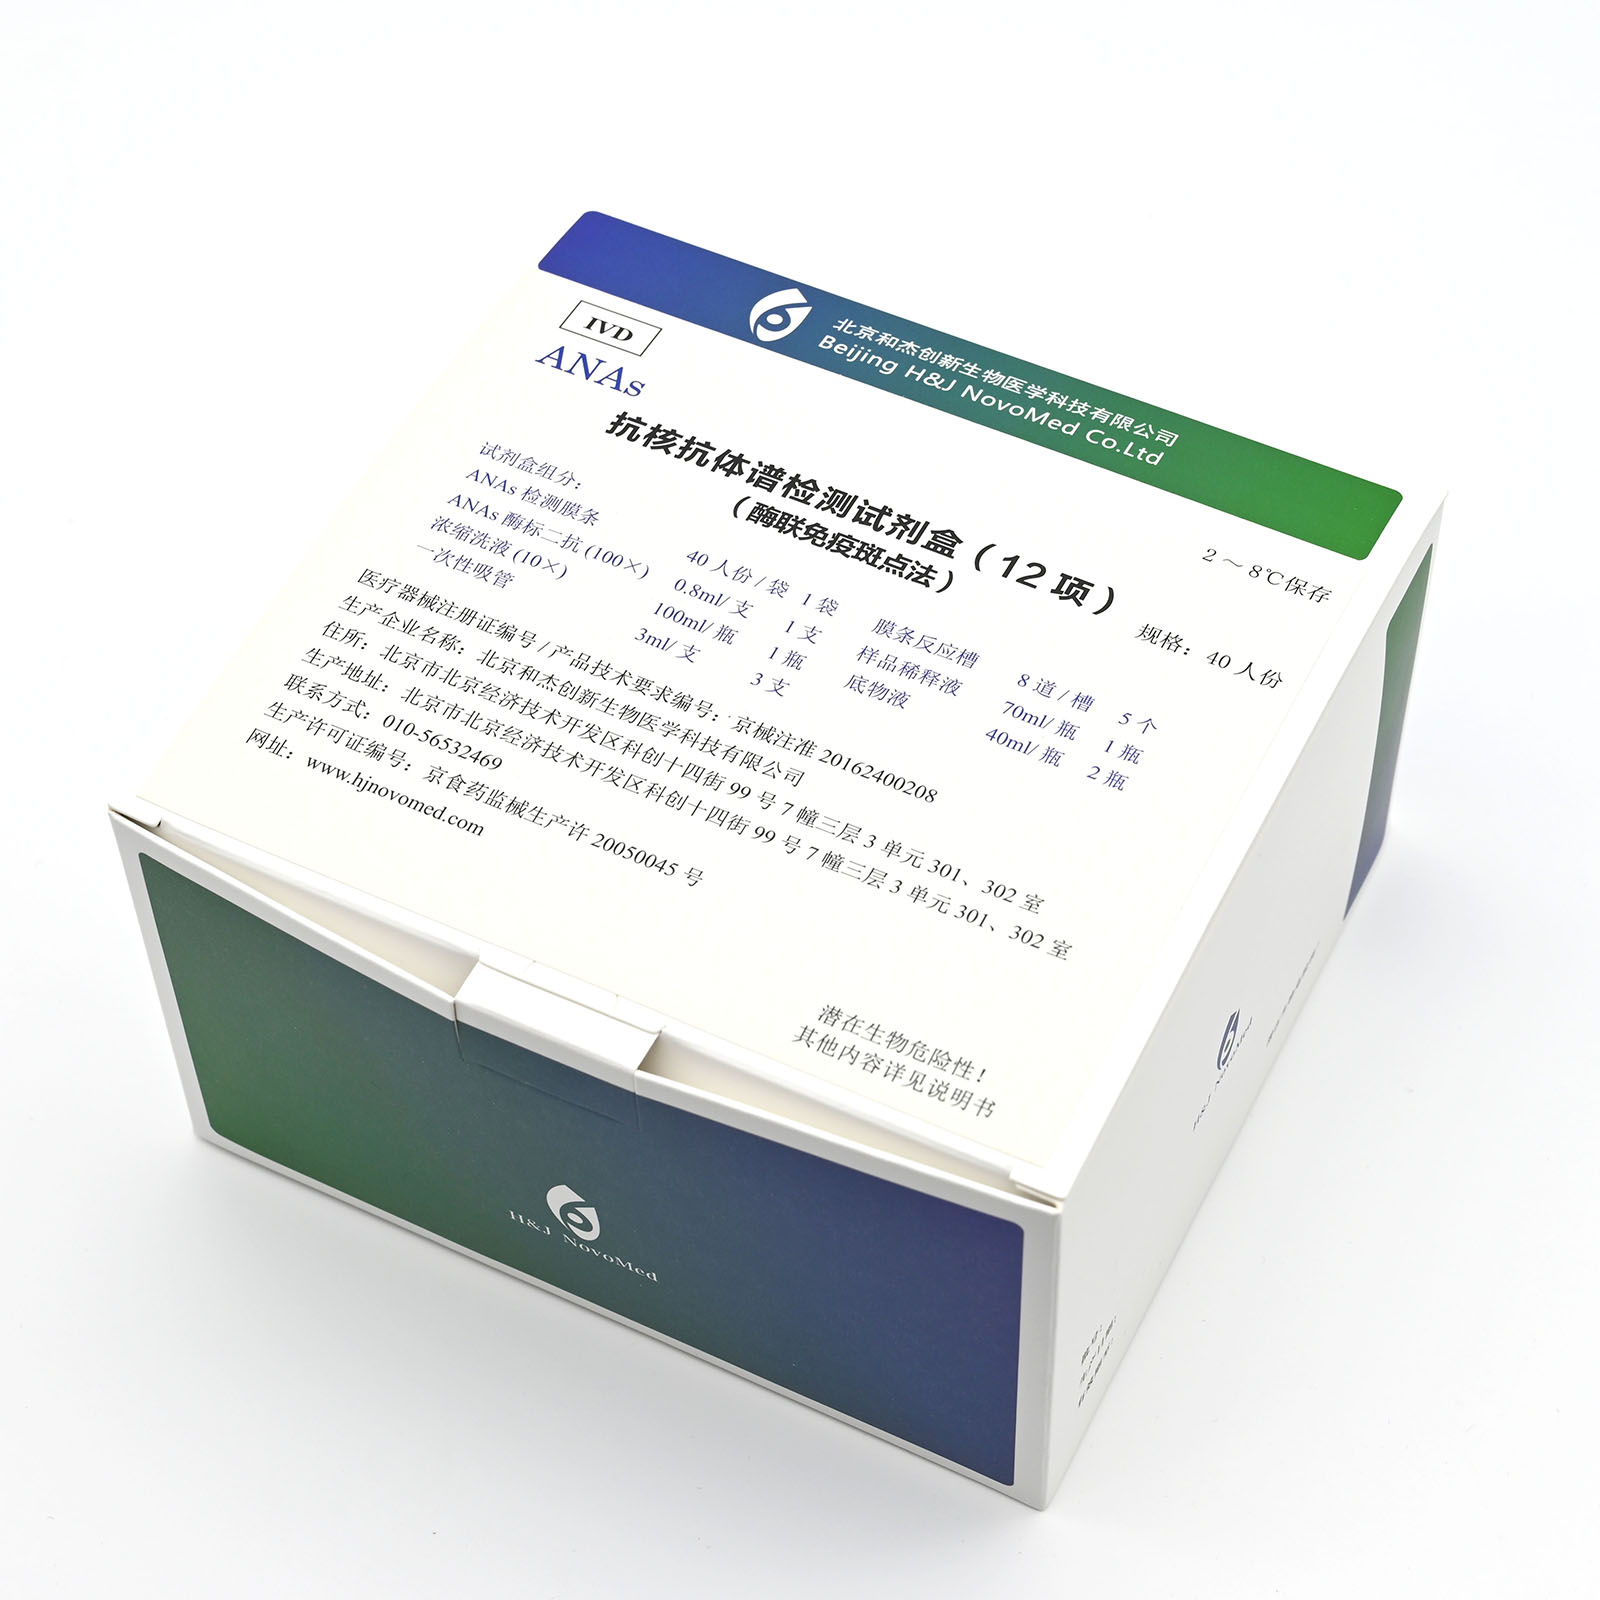 【和杰】抗核抗体谱检测试剂盒(酶联免疫斑点法)/12项